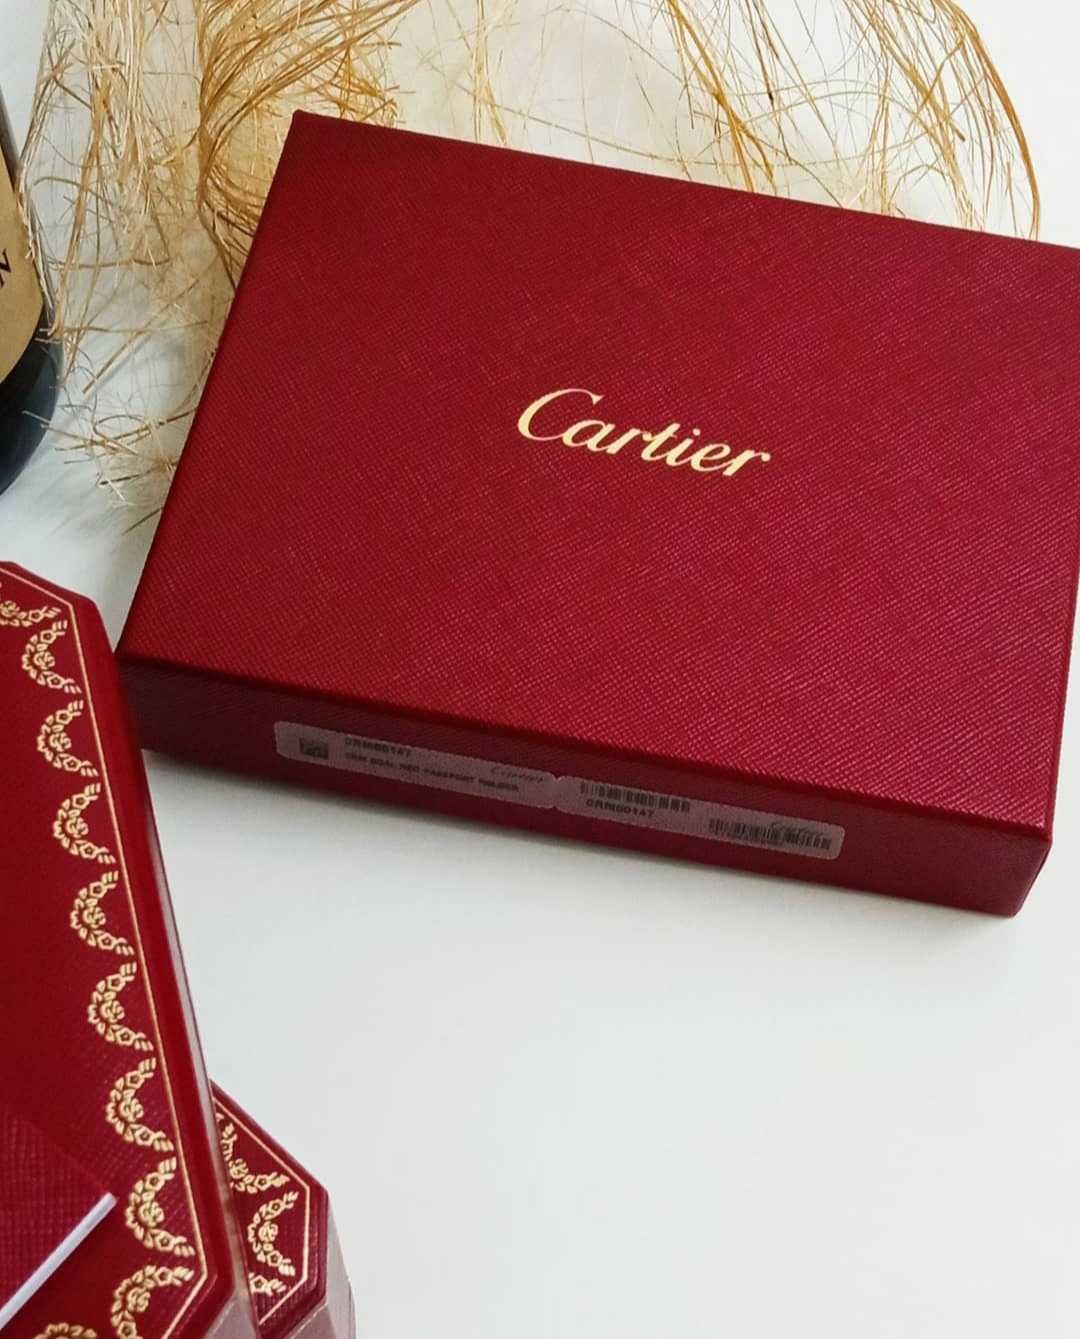 Carteira de Luxo Cartier